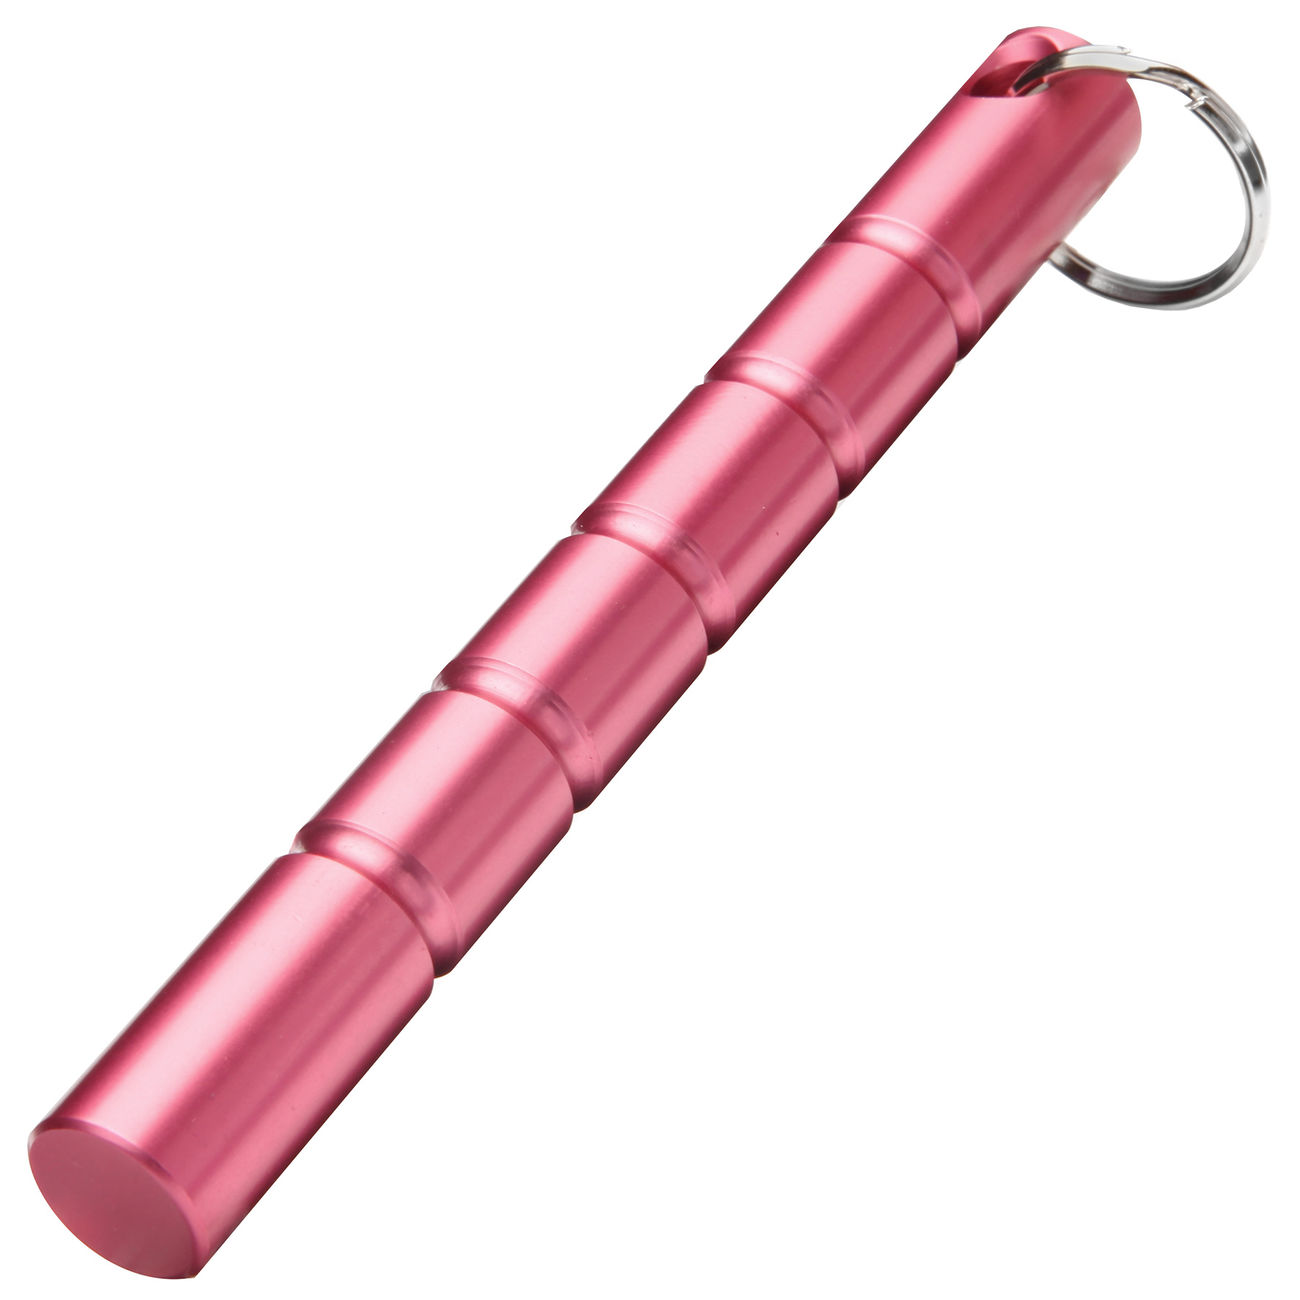 Kubotan mit Schlüsselring pink Bild 1